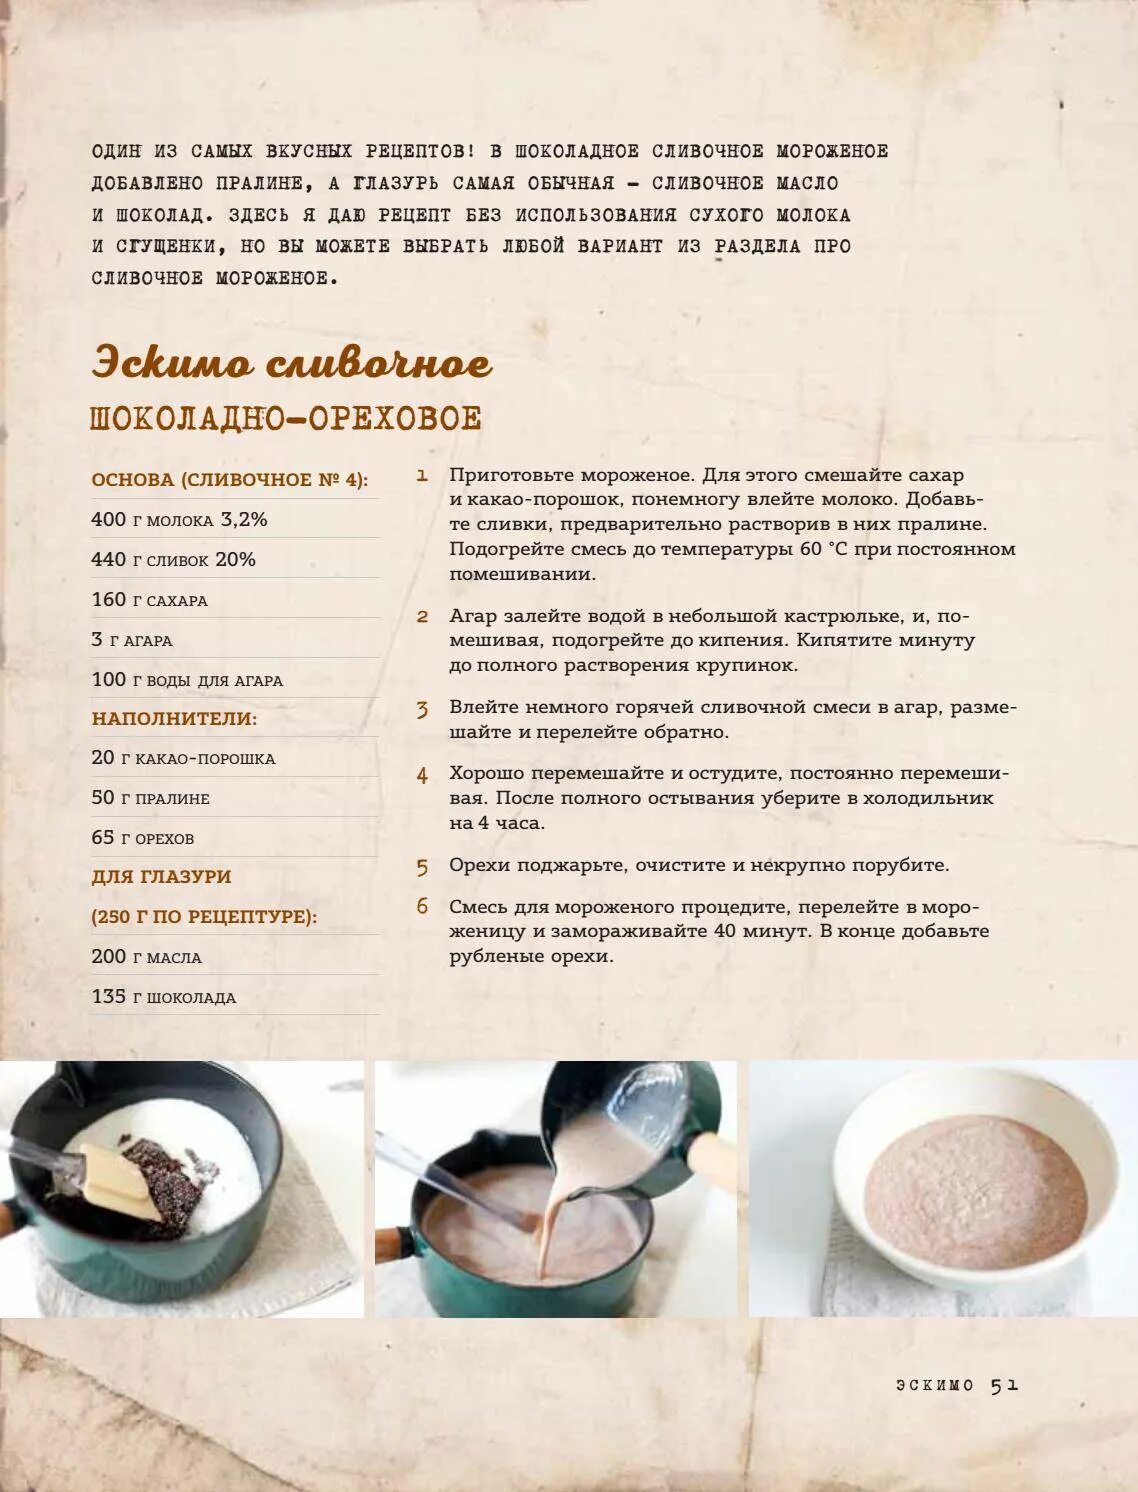 Рецепт шоколада какао масло какао порошок. Приготовление какао. Как приготовить какао. Рецепт домашнего шоколада из какао. Шоколад из какао порошка.